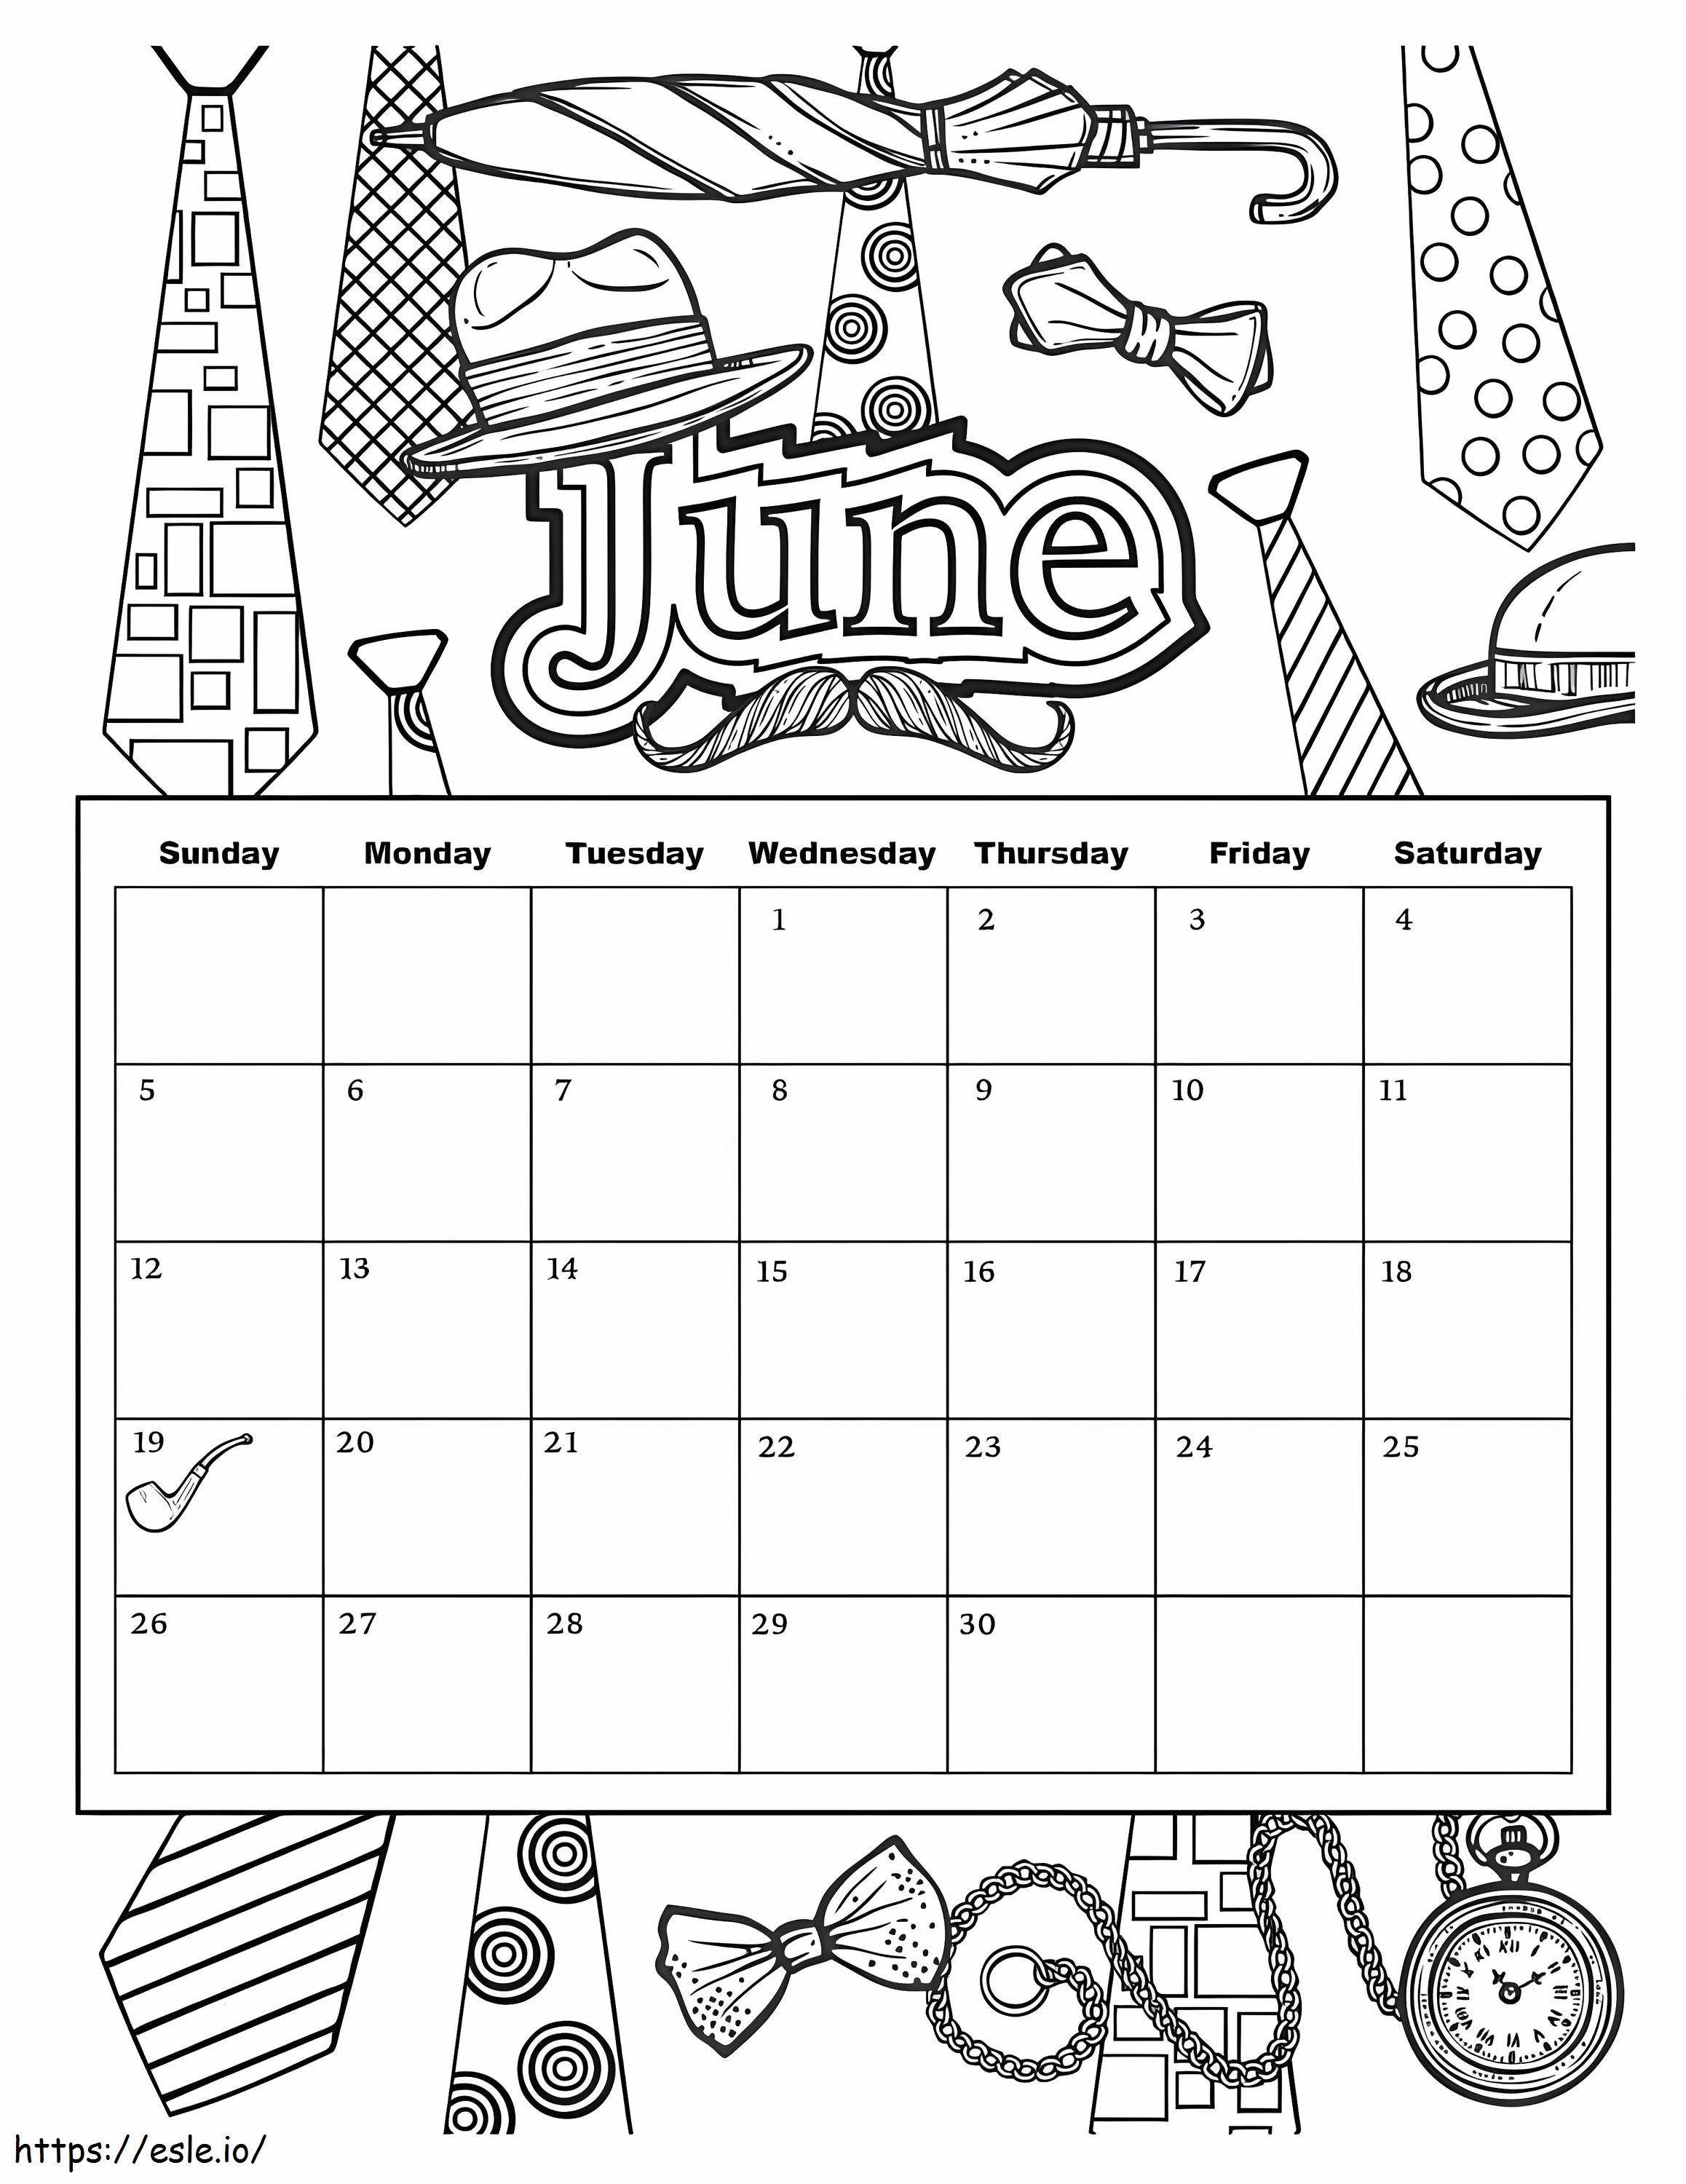 Calendario giugno 2019 da colorare